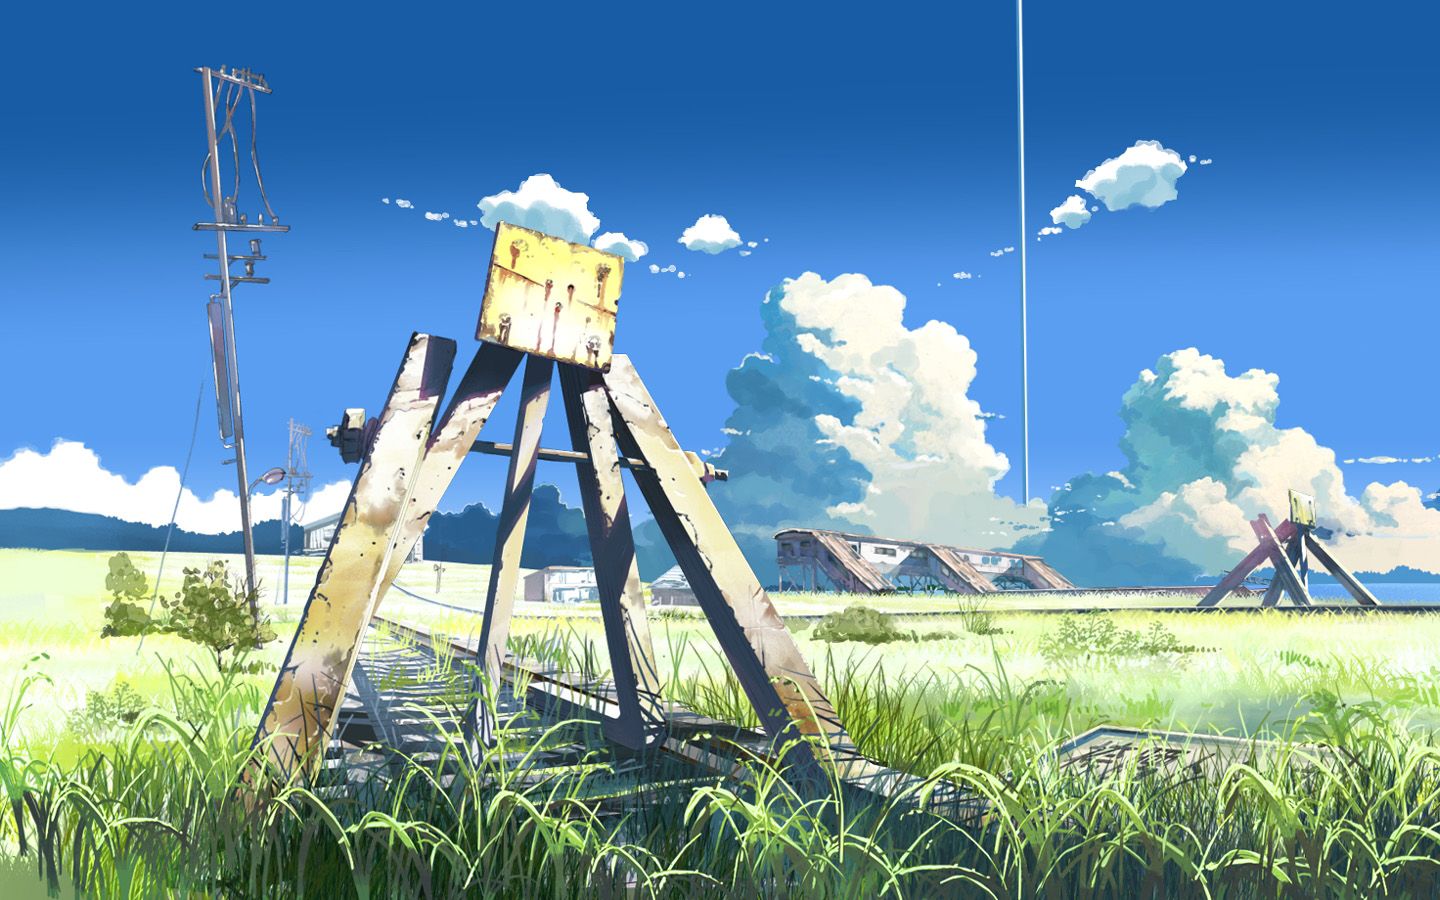 Studio Ghibli Wallpaper 1440x900 ID9481